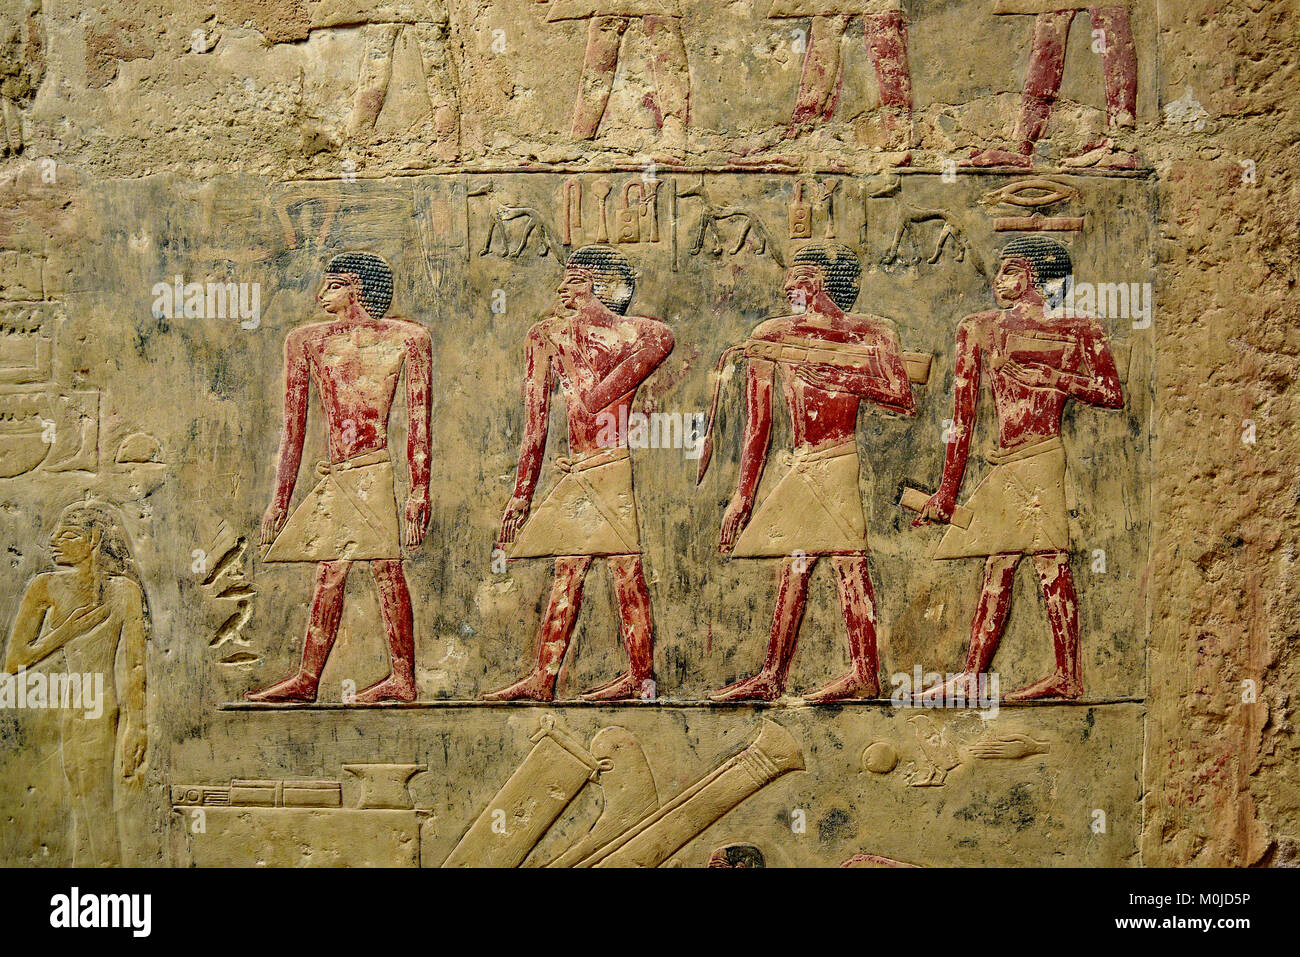 Antica geroglifico egizio pitture murali raffiguranti lo stile di vita e gli eventi, Giza in Egitto. Foto Stock